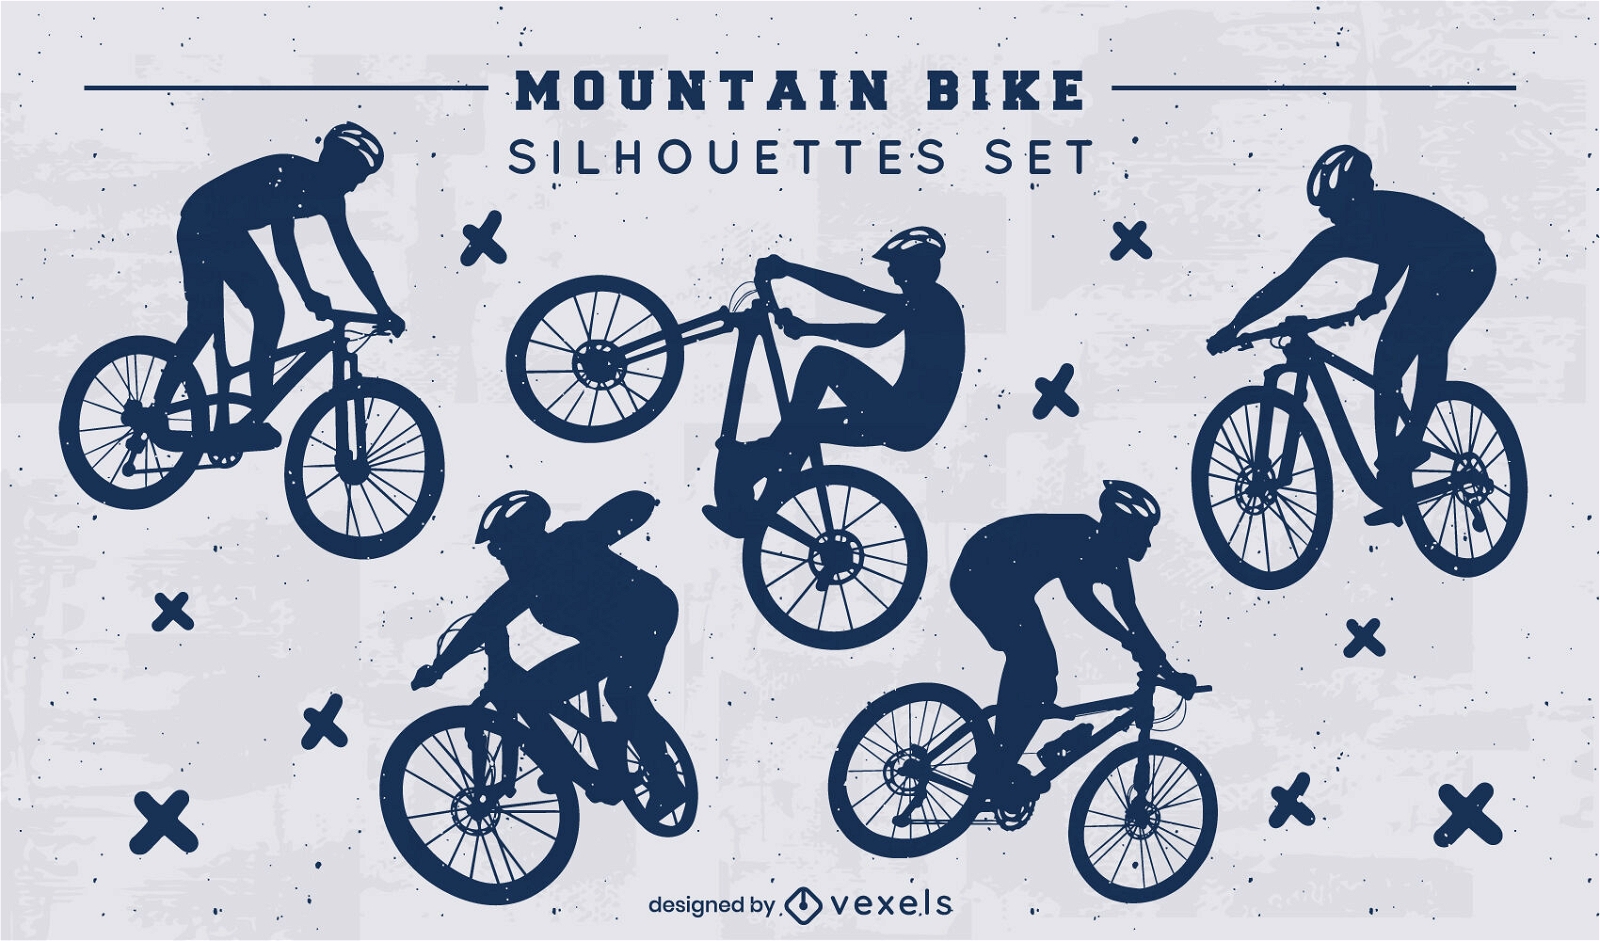 Mountain bike silhouettes set